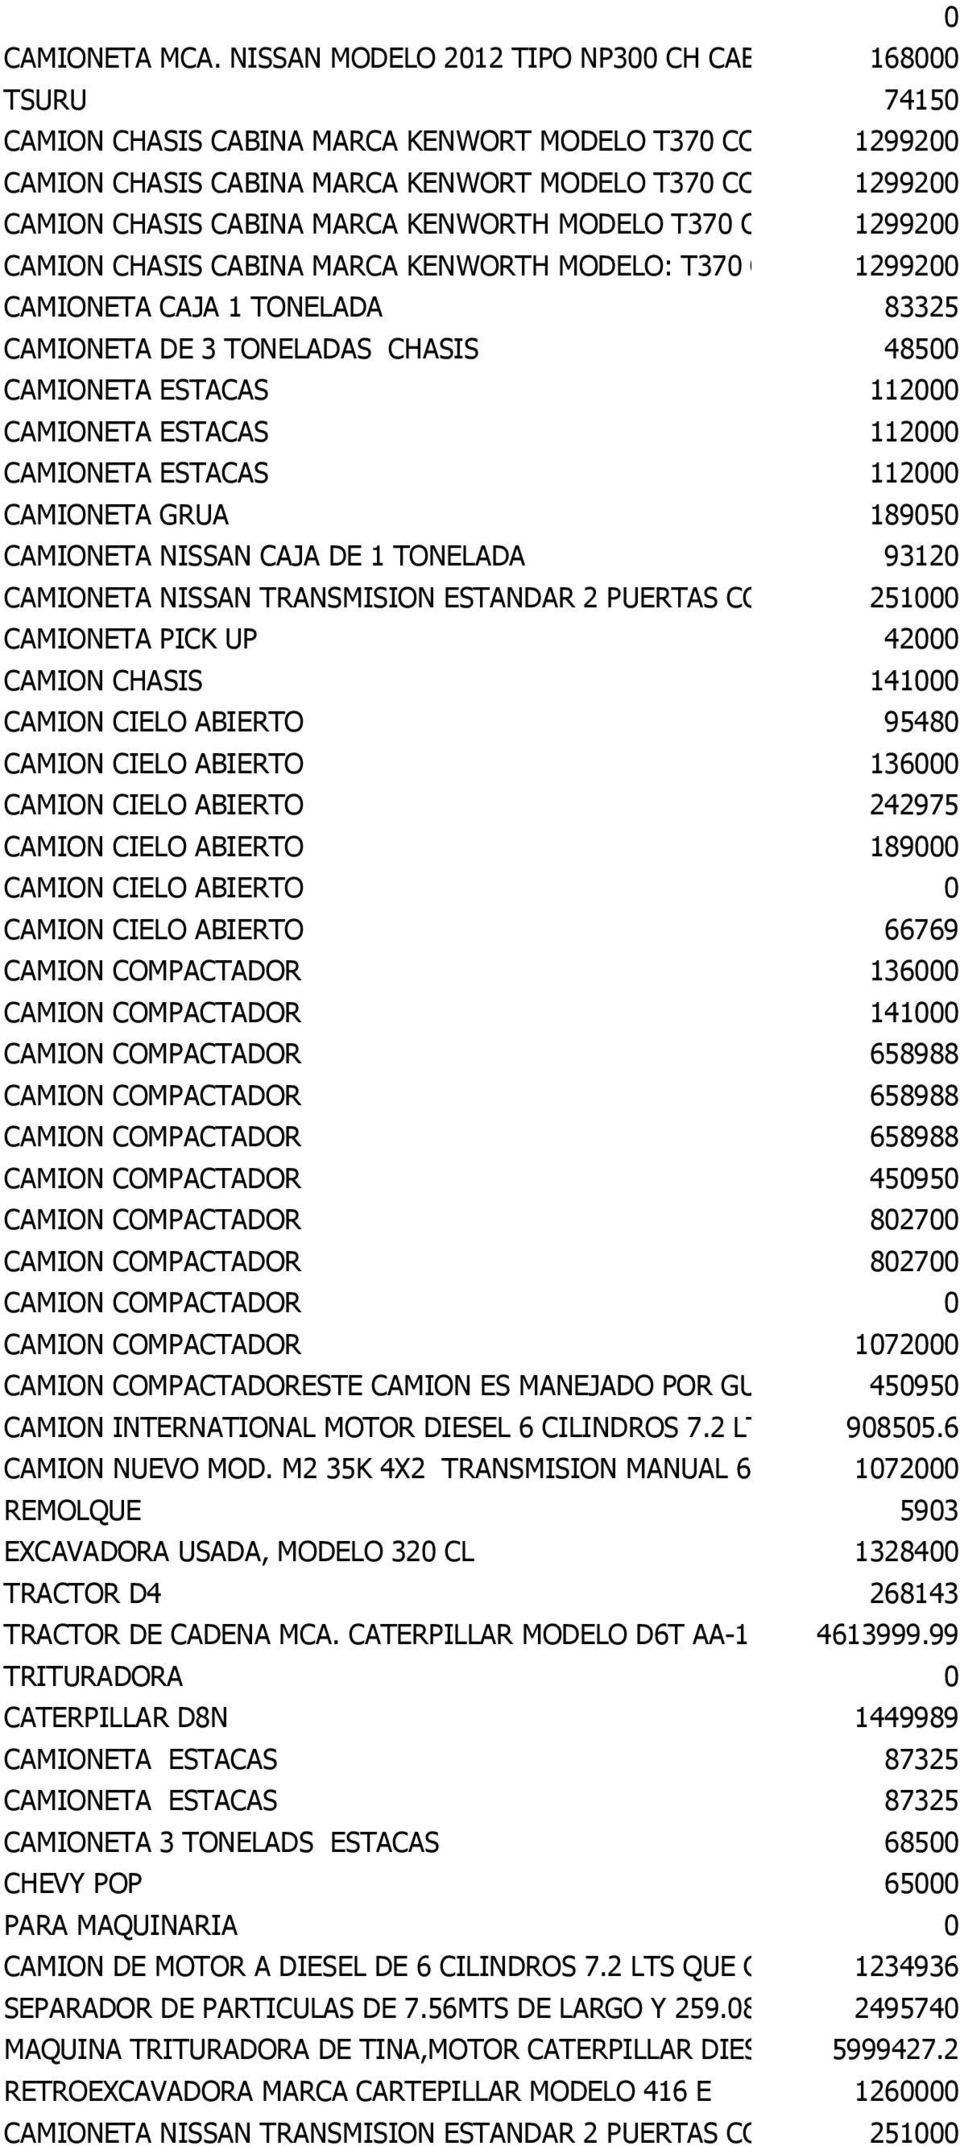 DE BASURA METRO-PACK, 20 YDS 3.CAMION COMPACTADOR CAMION CHASIS CABINA MARCA KENWORT MODELO T370 COMPACTADOR 1299200 DE BASURA METRO-PACK, 20 YRD 3.